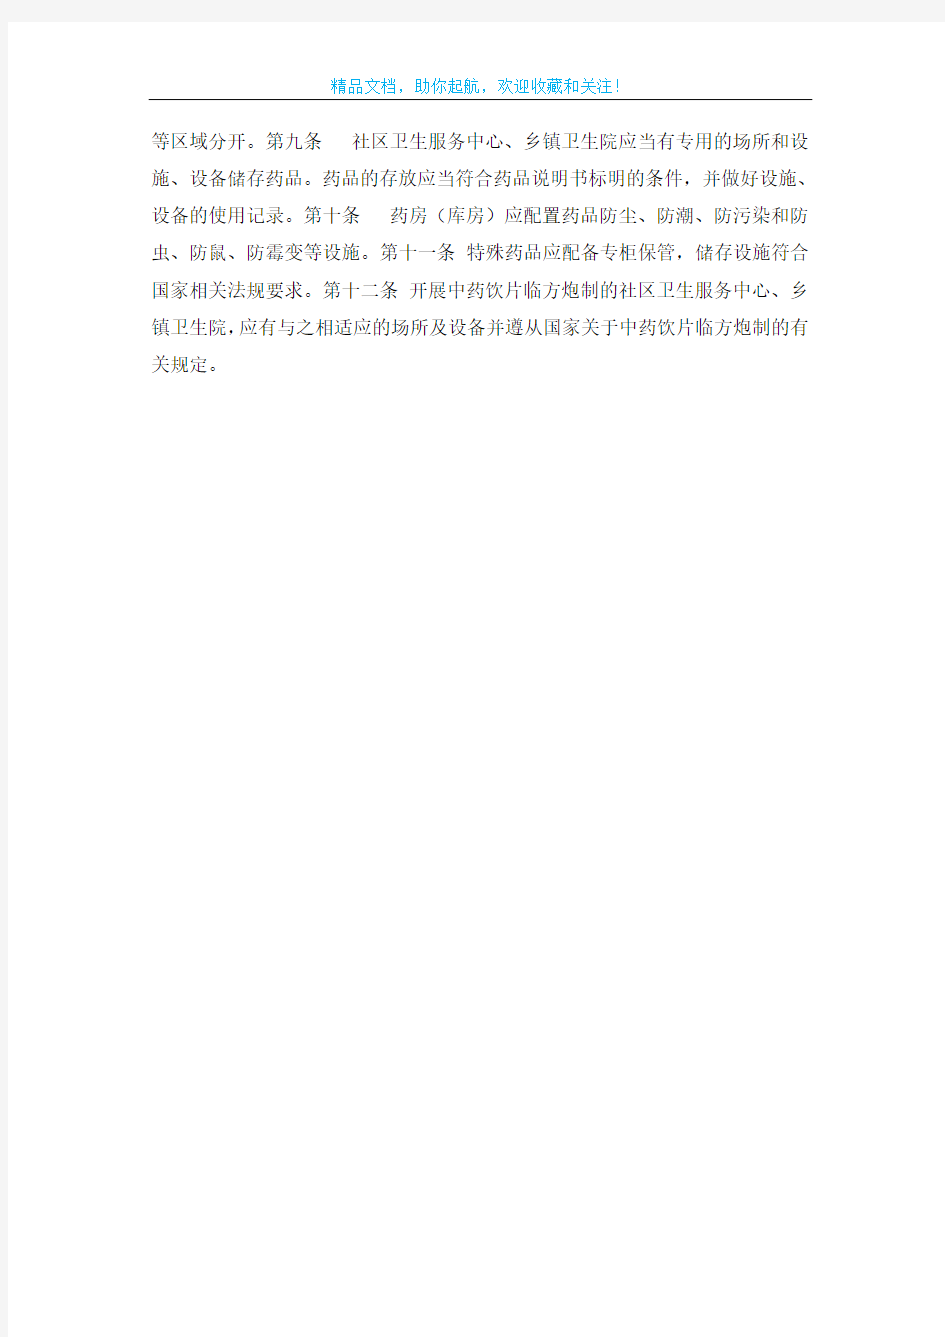 武汉市基层医疗机构药品安全管理规定